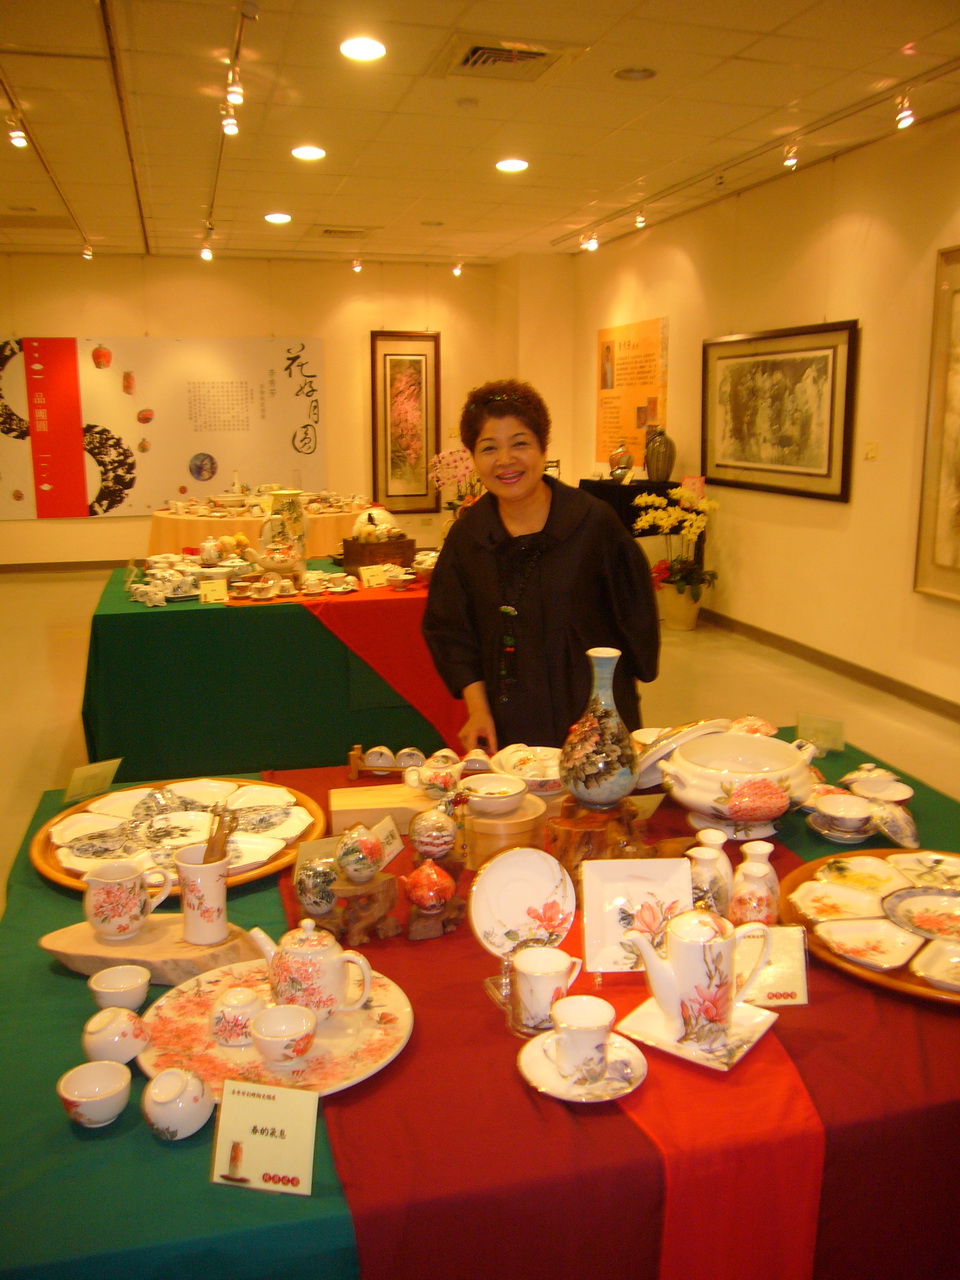 生活時尚藝術家李秀芳的彩繪陶瓷作品琳瑯滿目